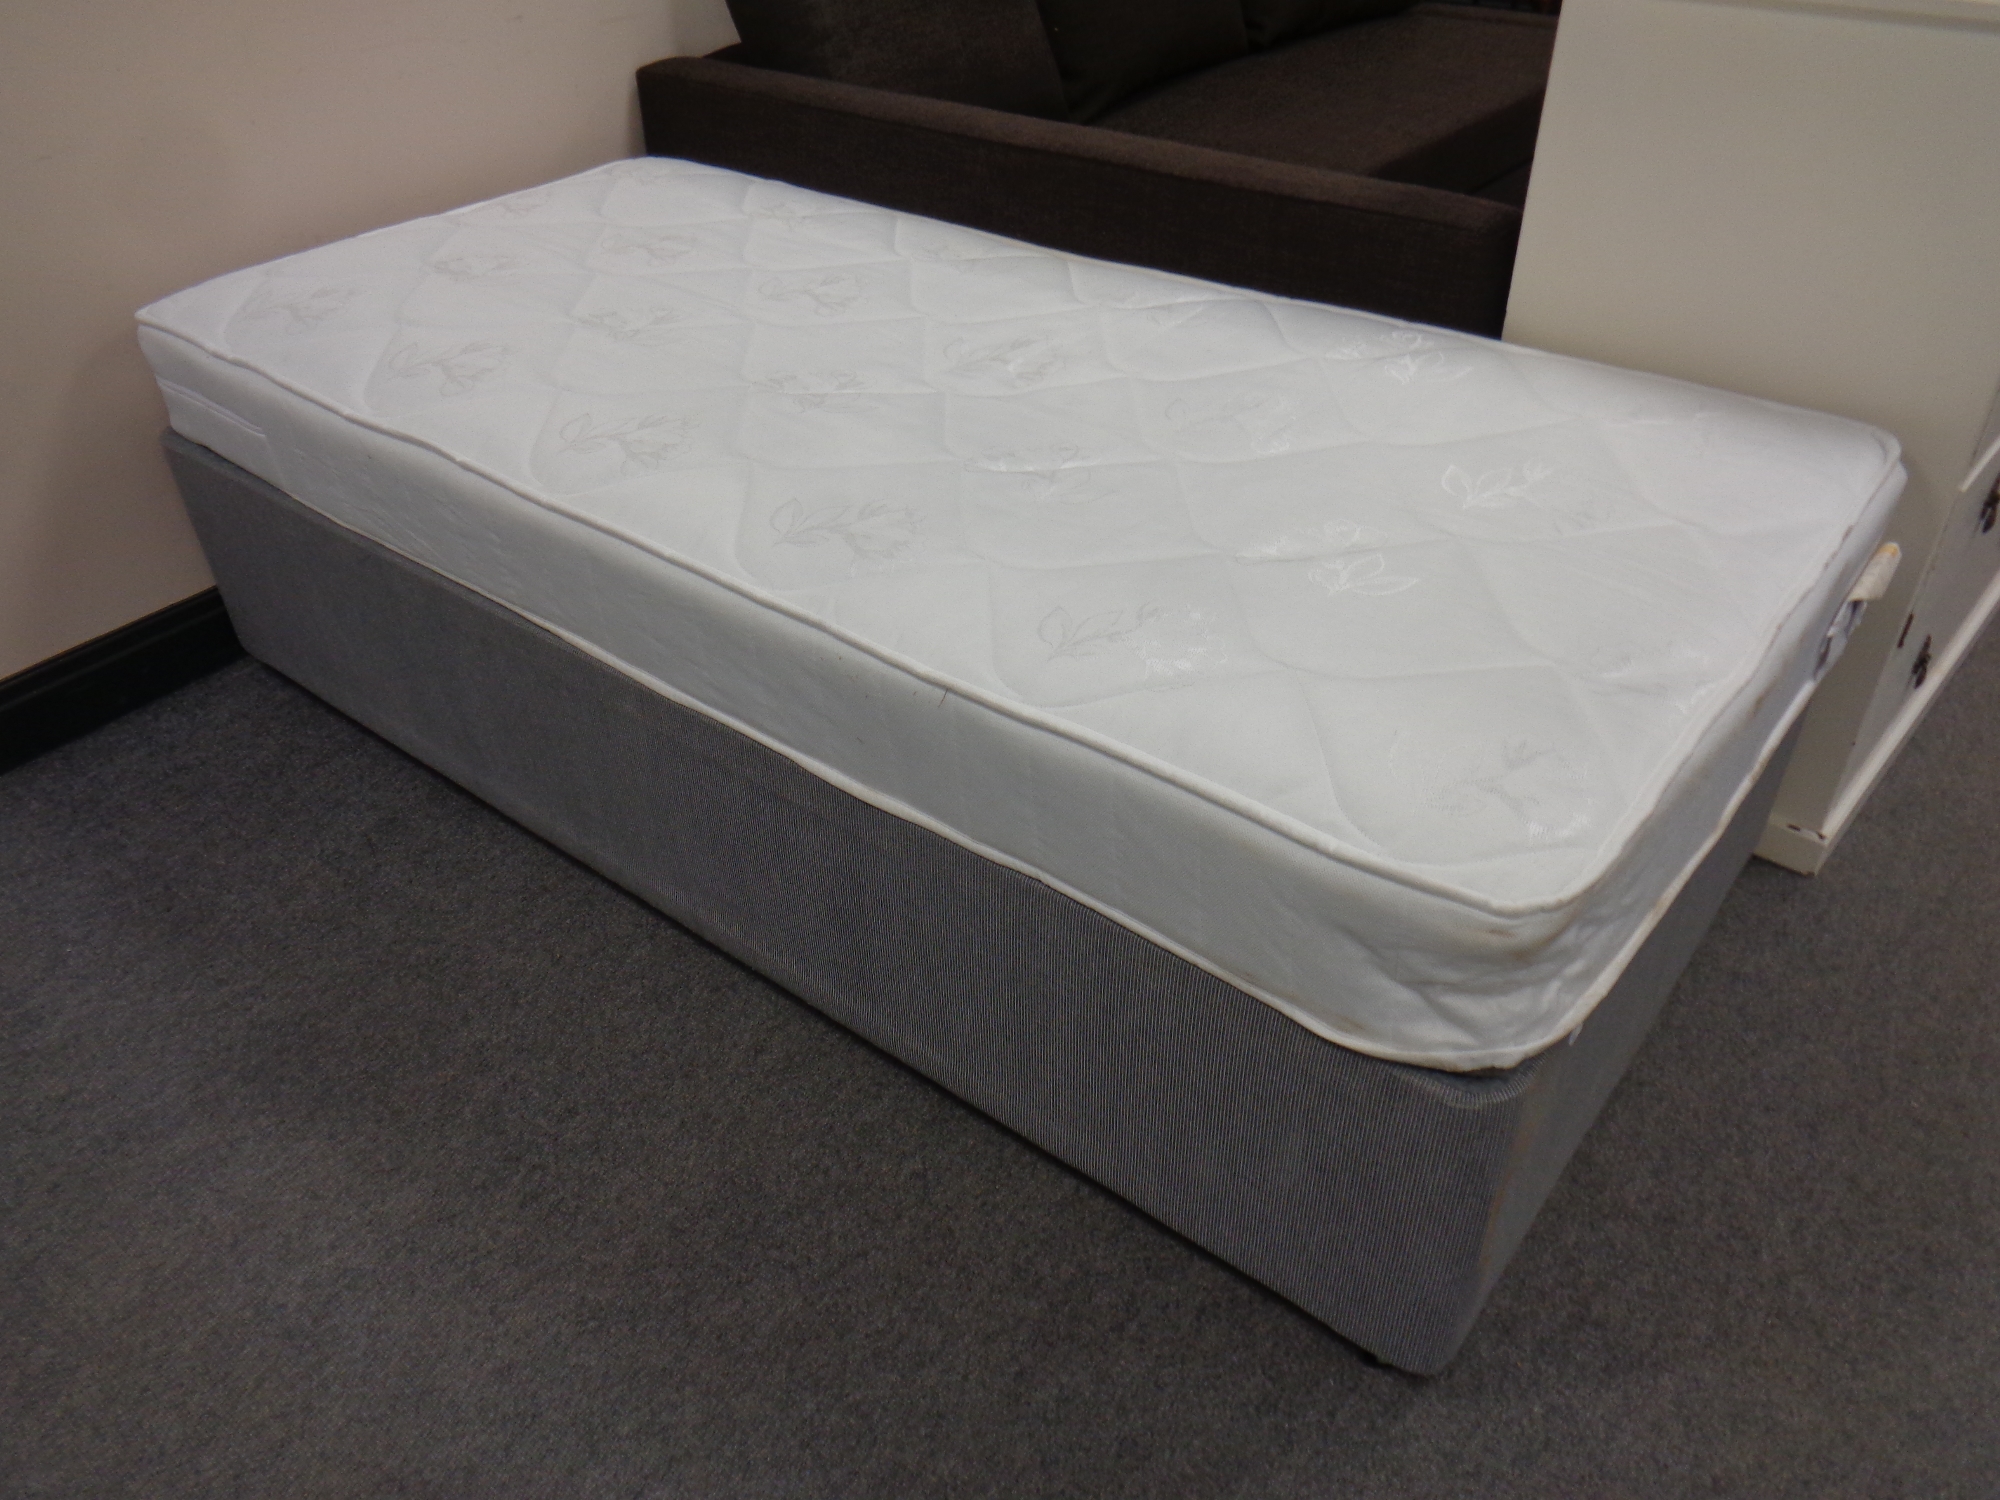 A 3' divan with mattress